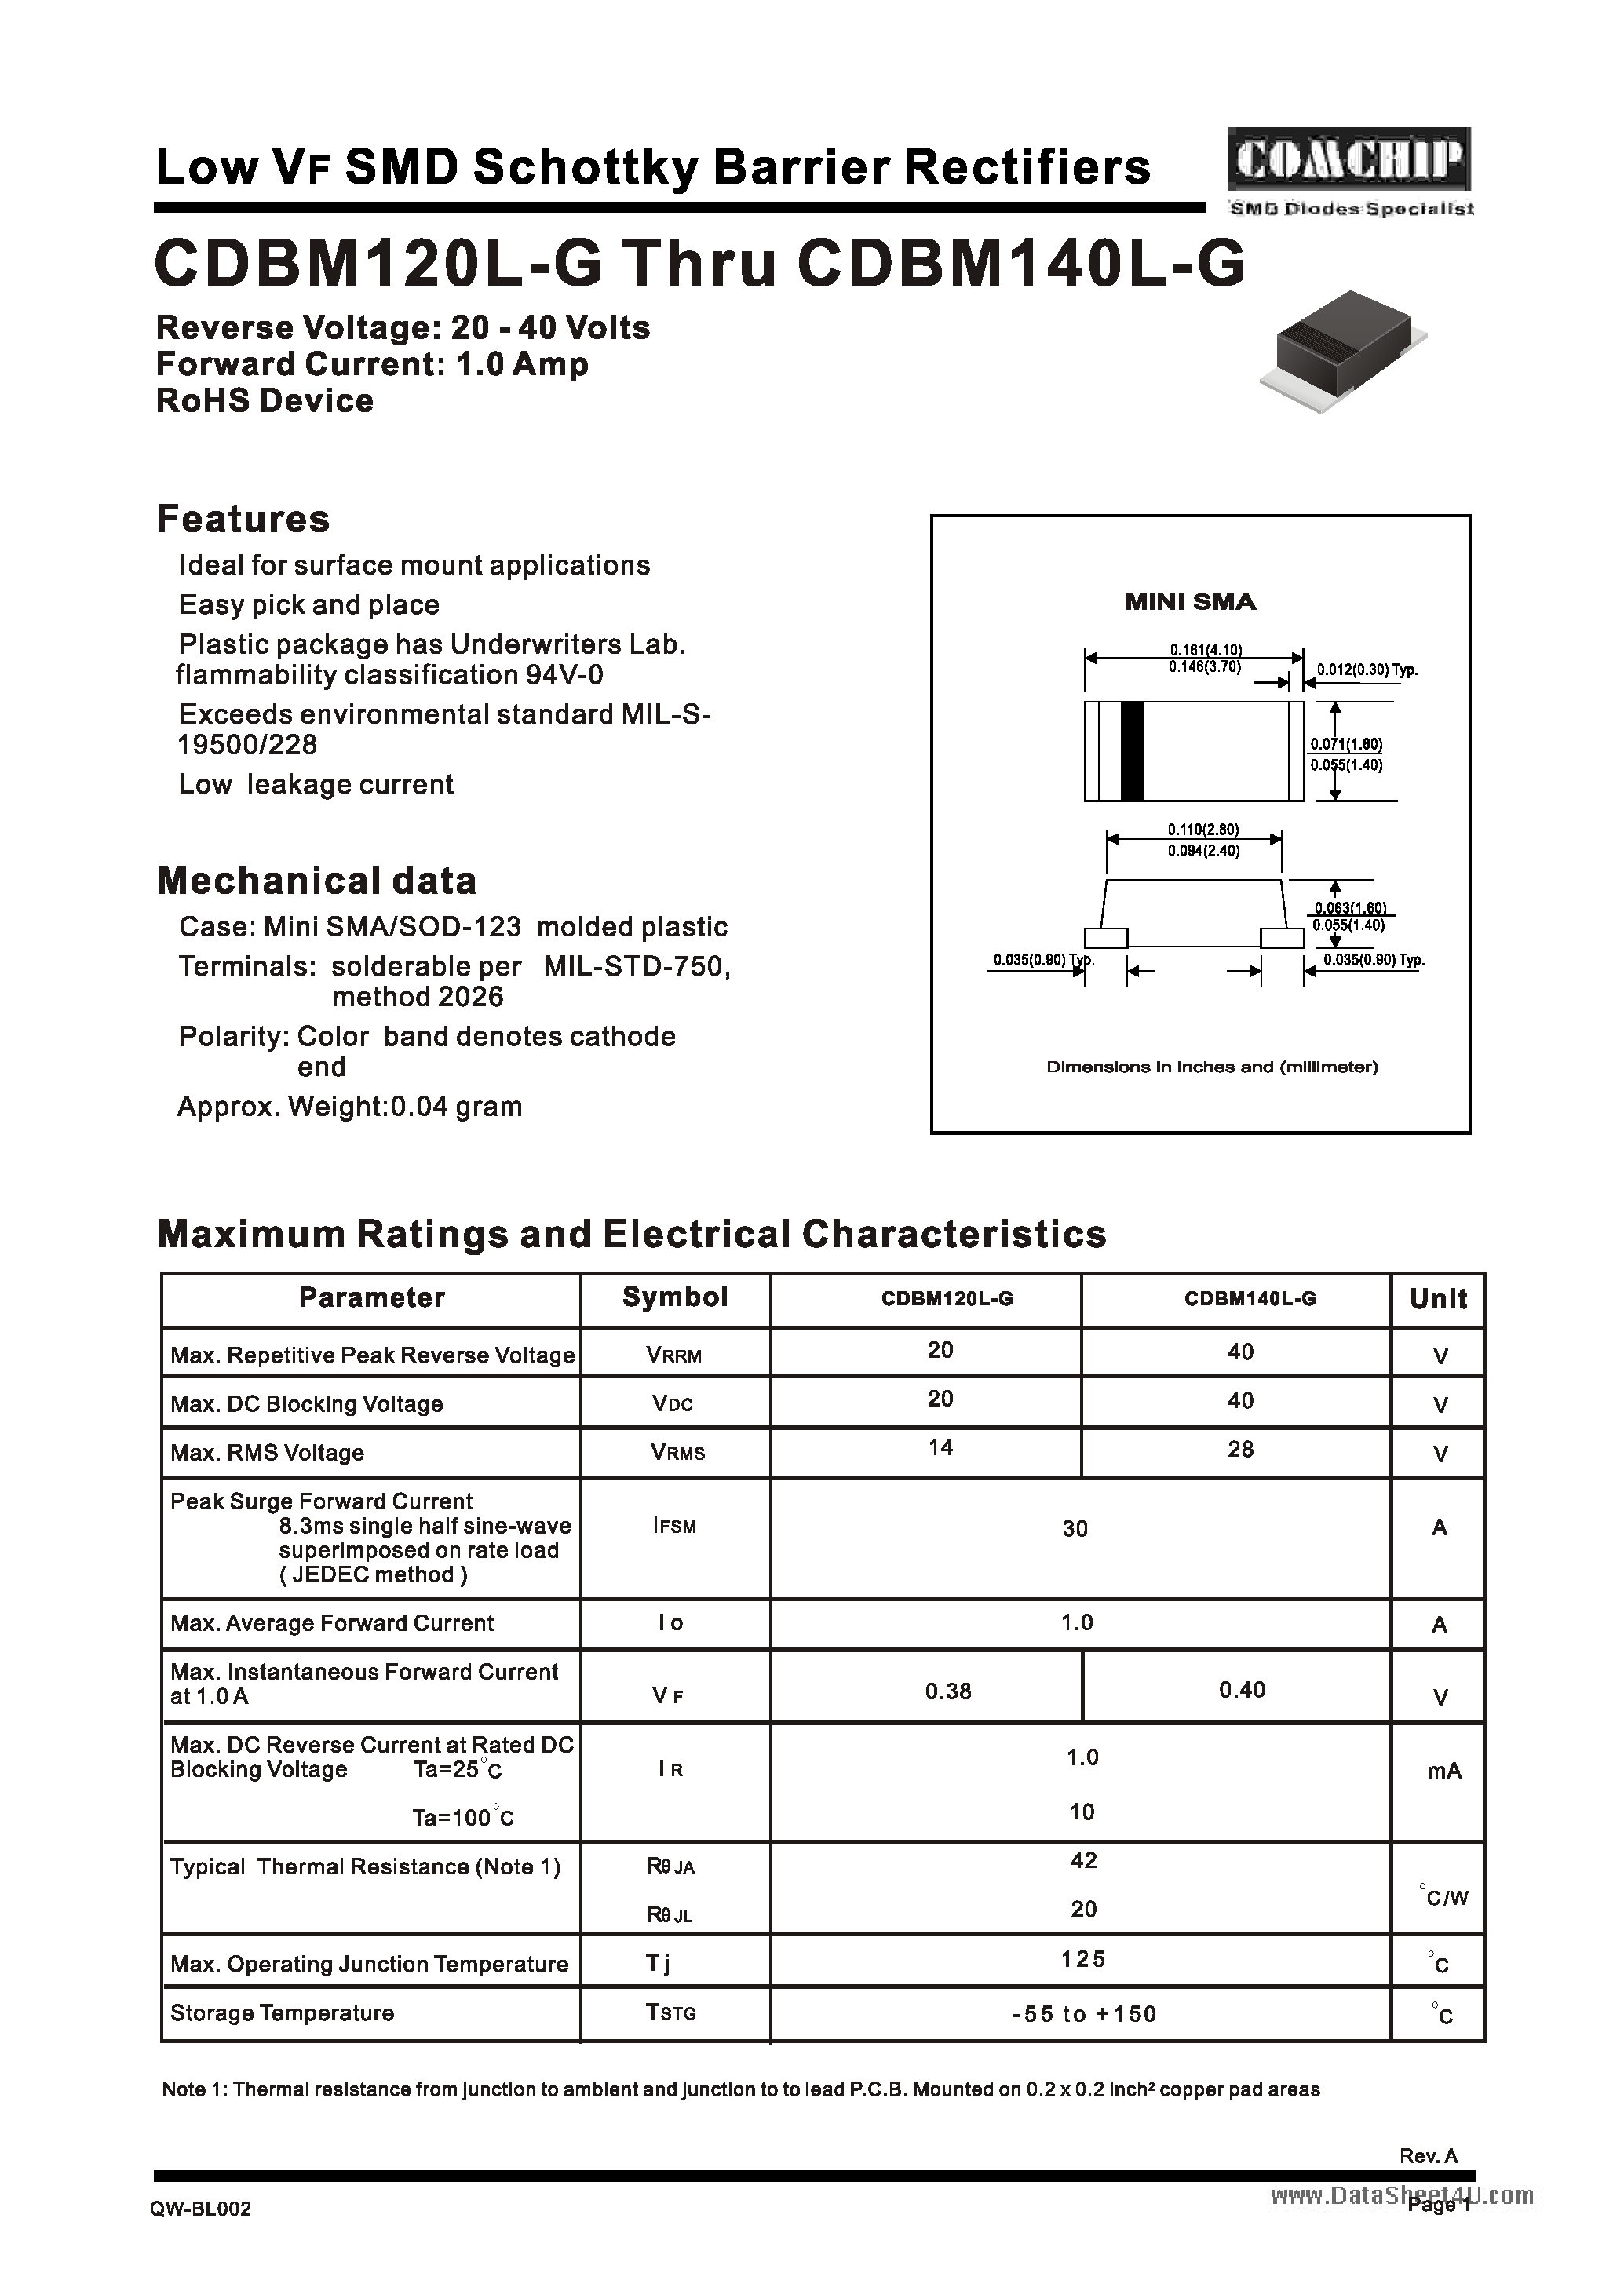 Даташит CDBM120L-G - (CDBM120L-G / CDBM140L-G) Low VF SMD Schottky Barrier Rectifier страница 1